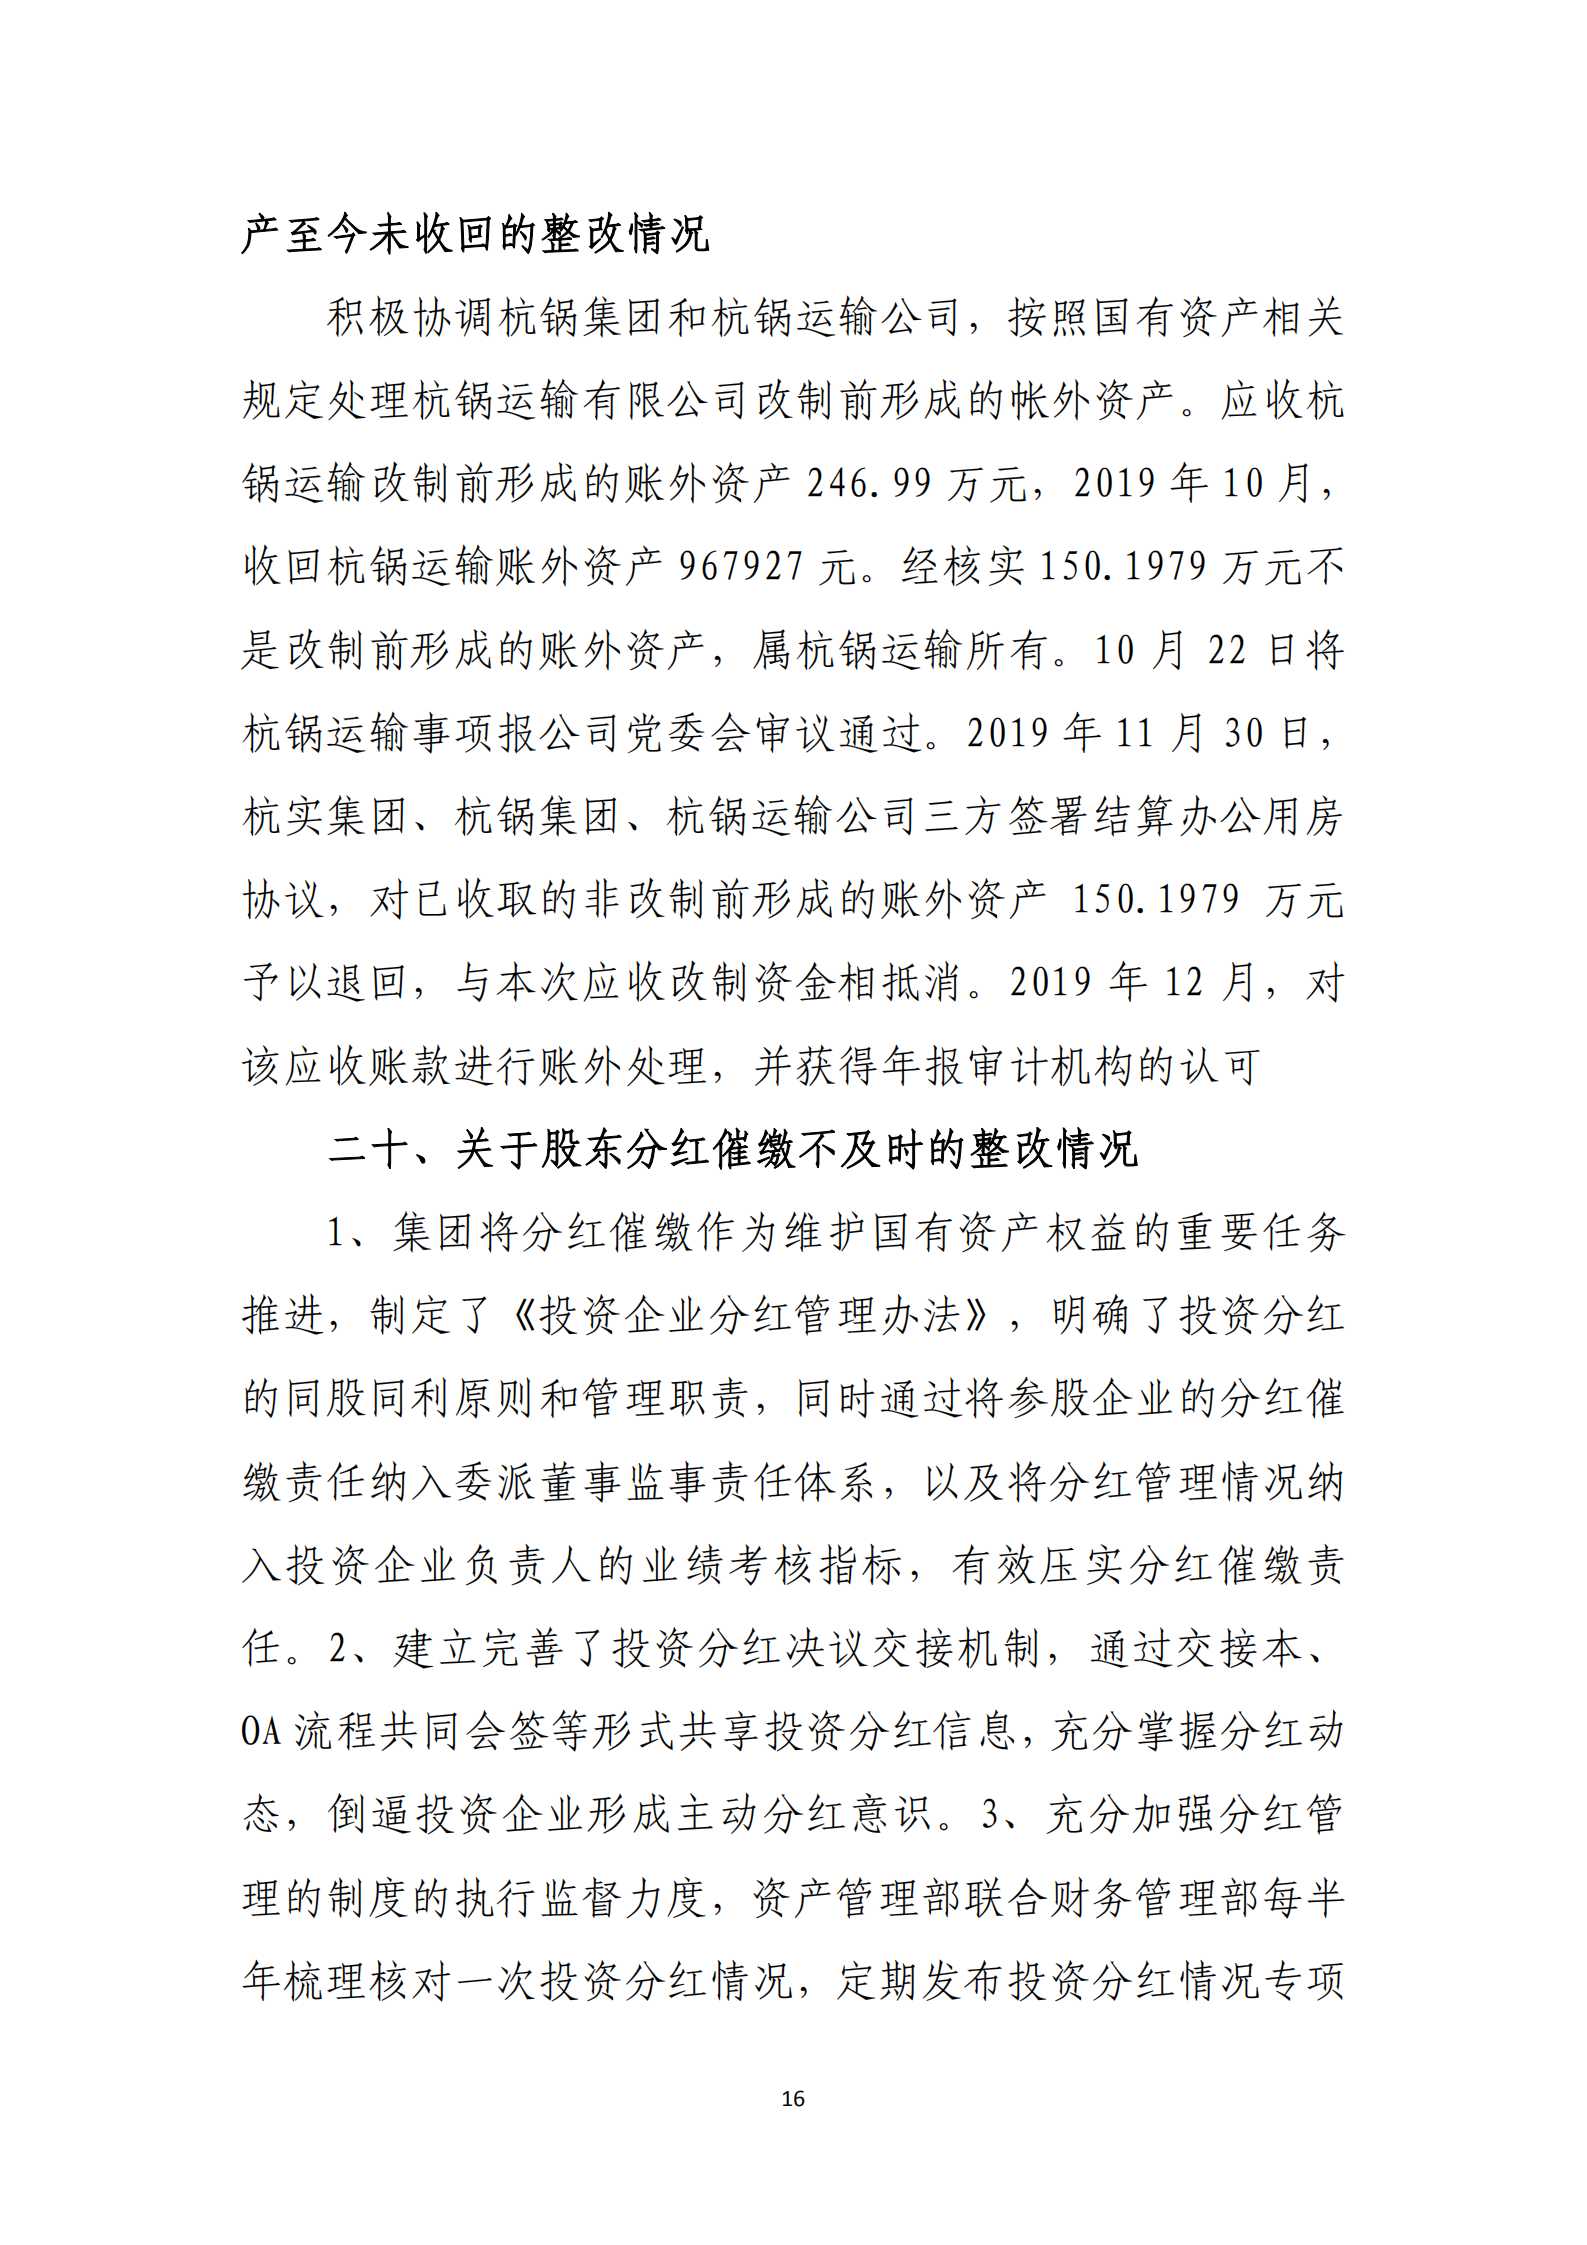 杭实集团党委关于巡察整改情况的通报_15.png